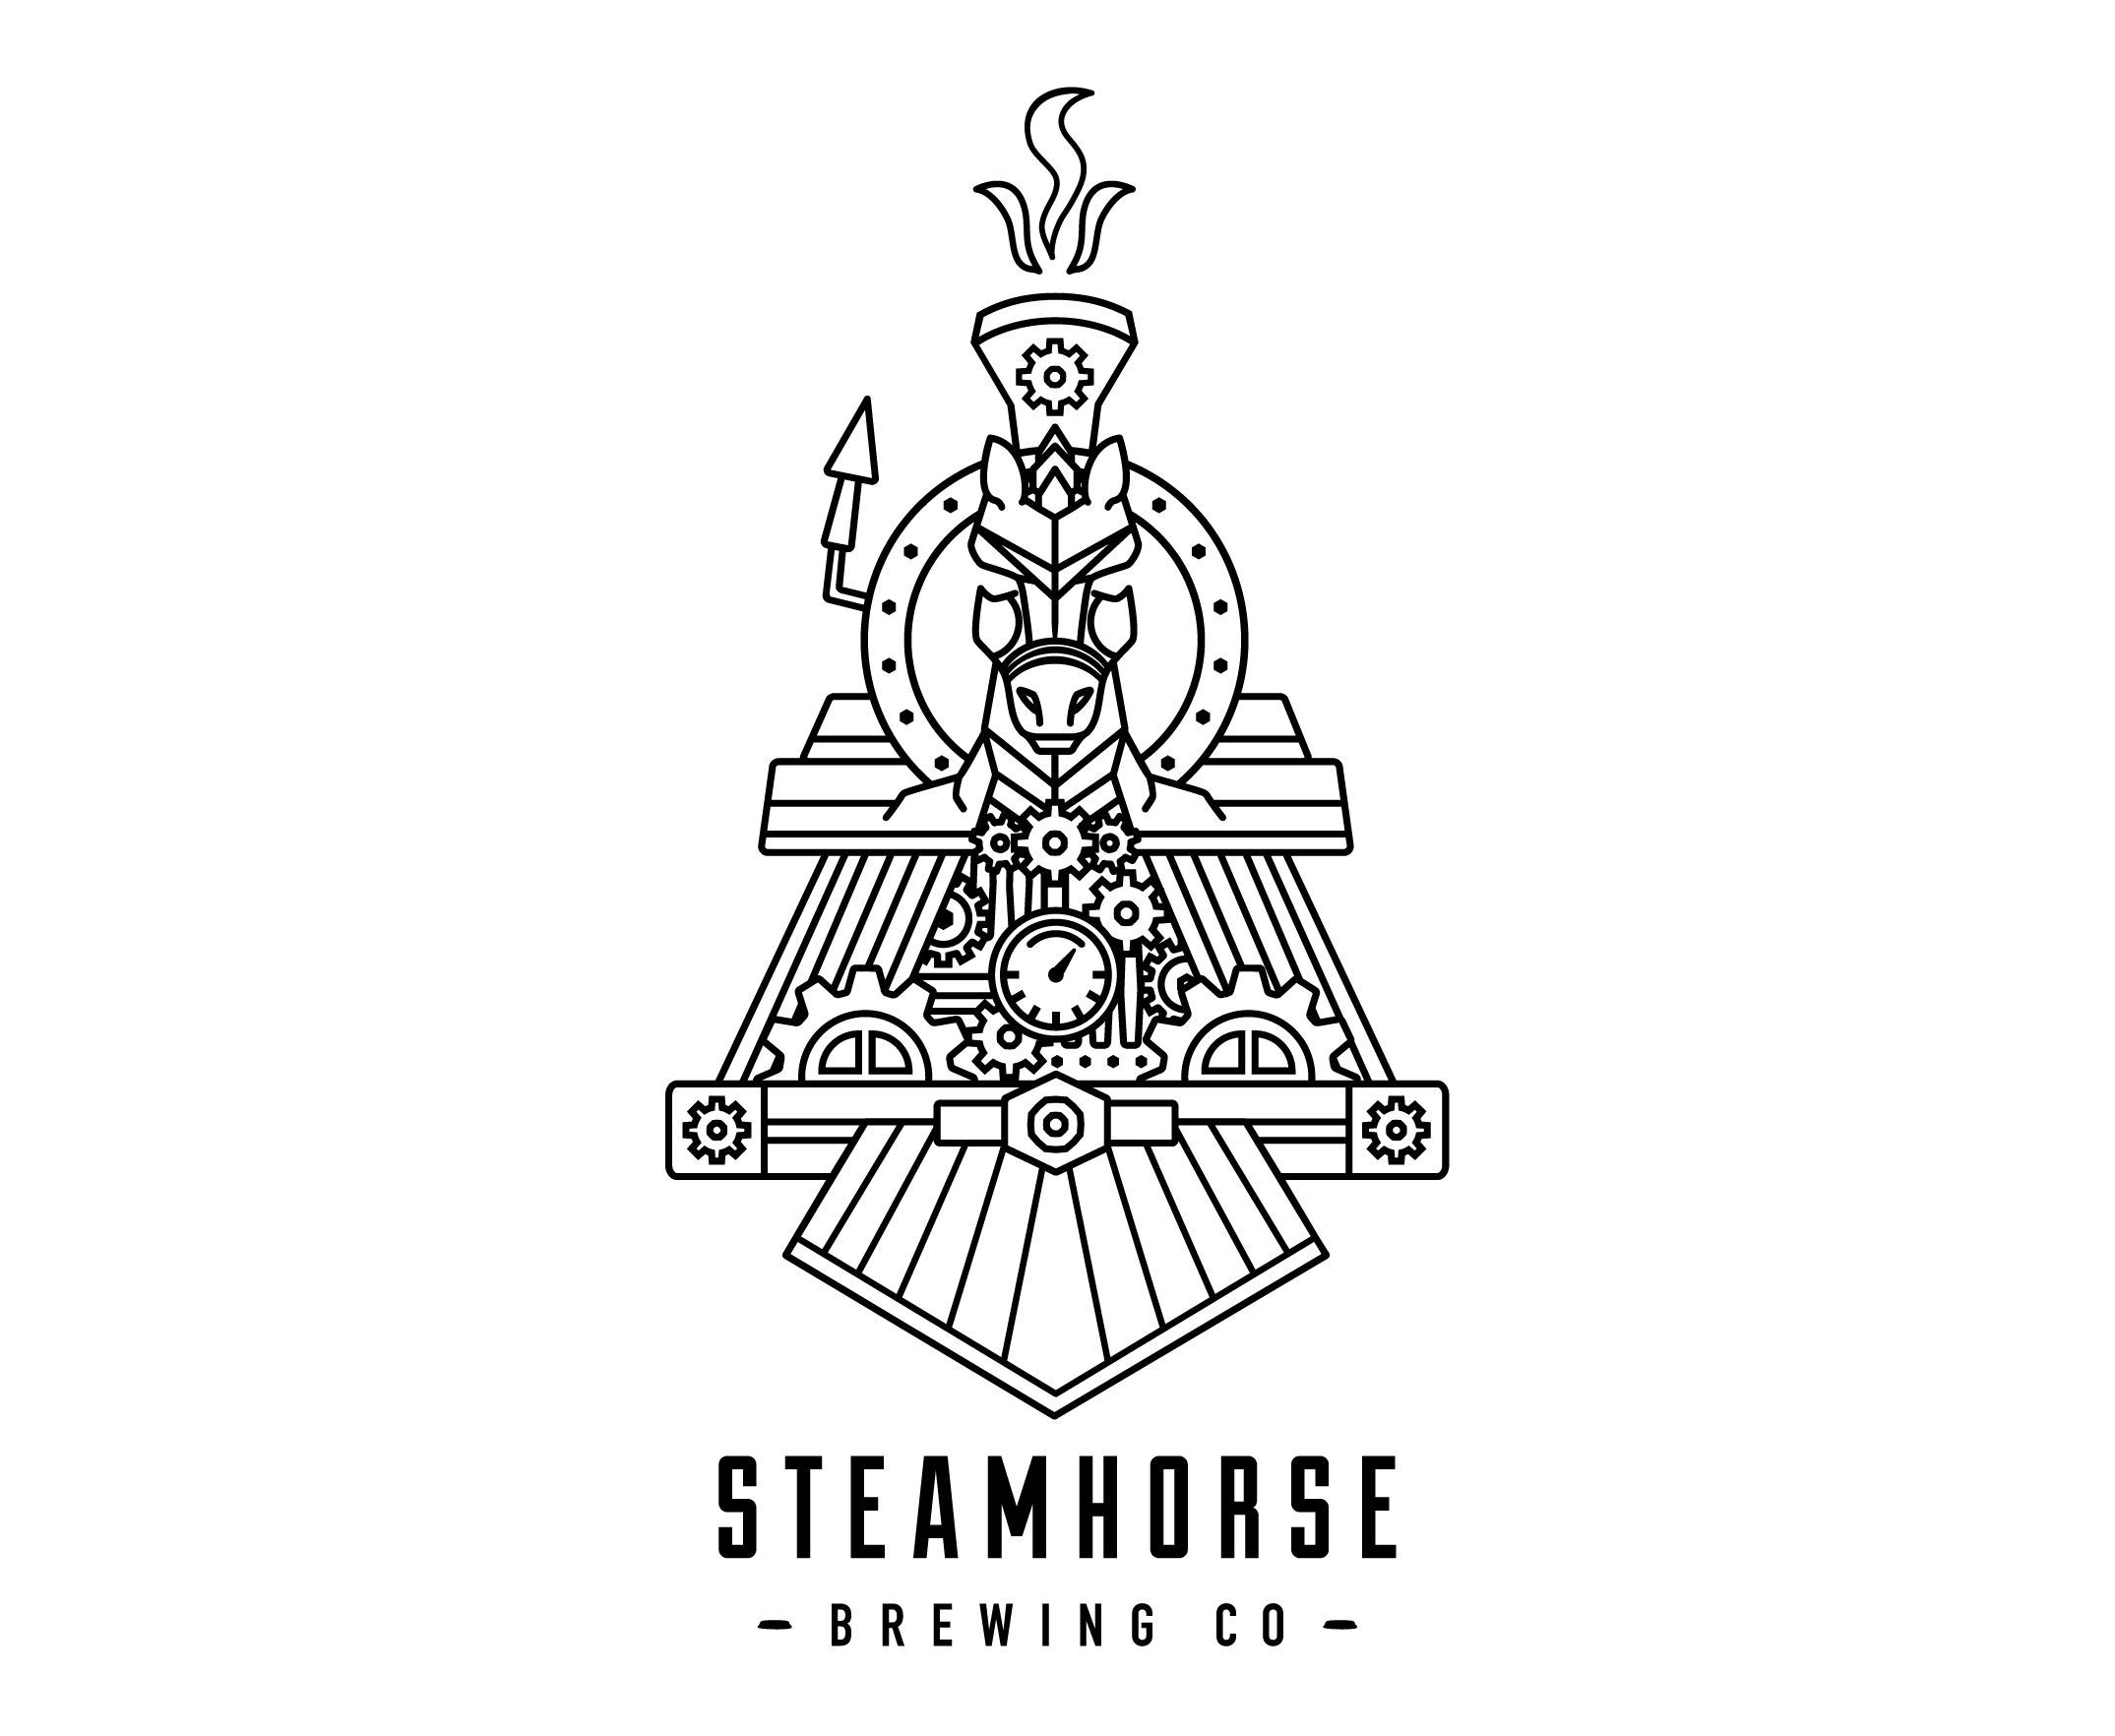 Steamhorse Brewing Co. logo GIF